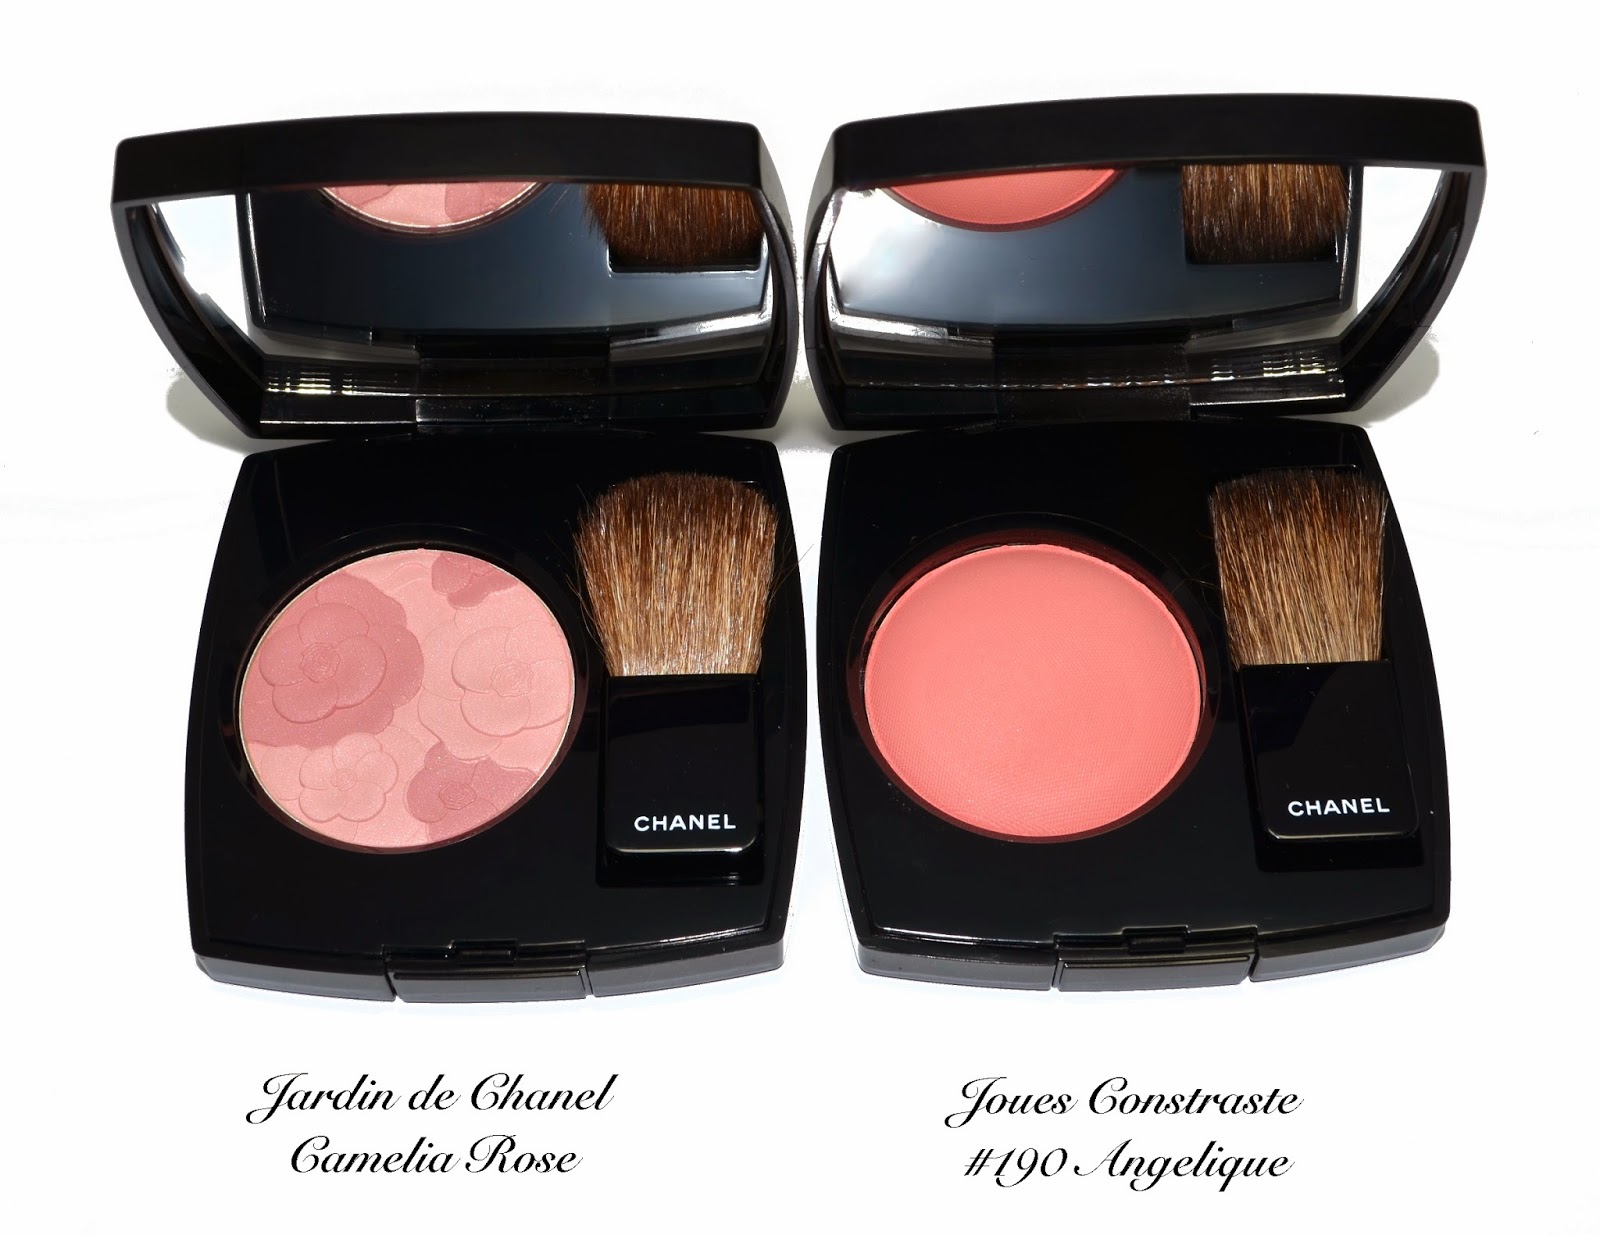 Chanel Jardin de Chanel Blush Camelia Rose & Joues Contraste #190 Angelique  for Rêverie Parisienne Spring 2015 Collection, Review, Swatch & Comparison  | Color Me Loud